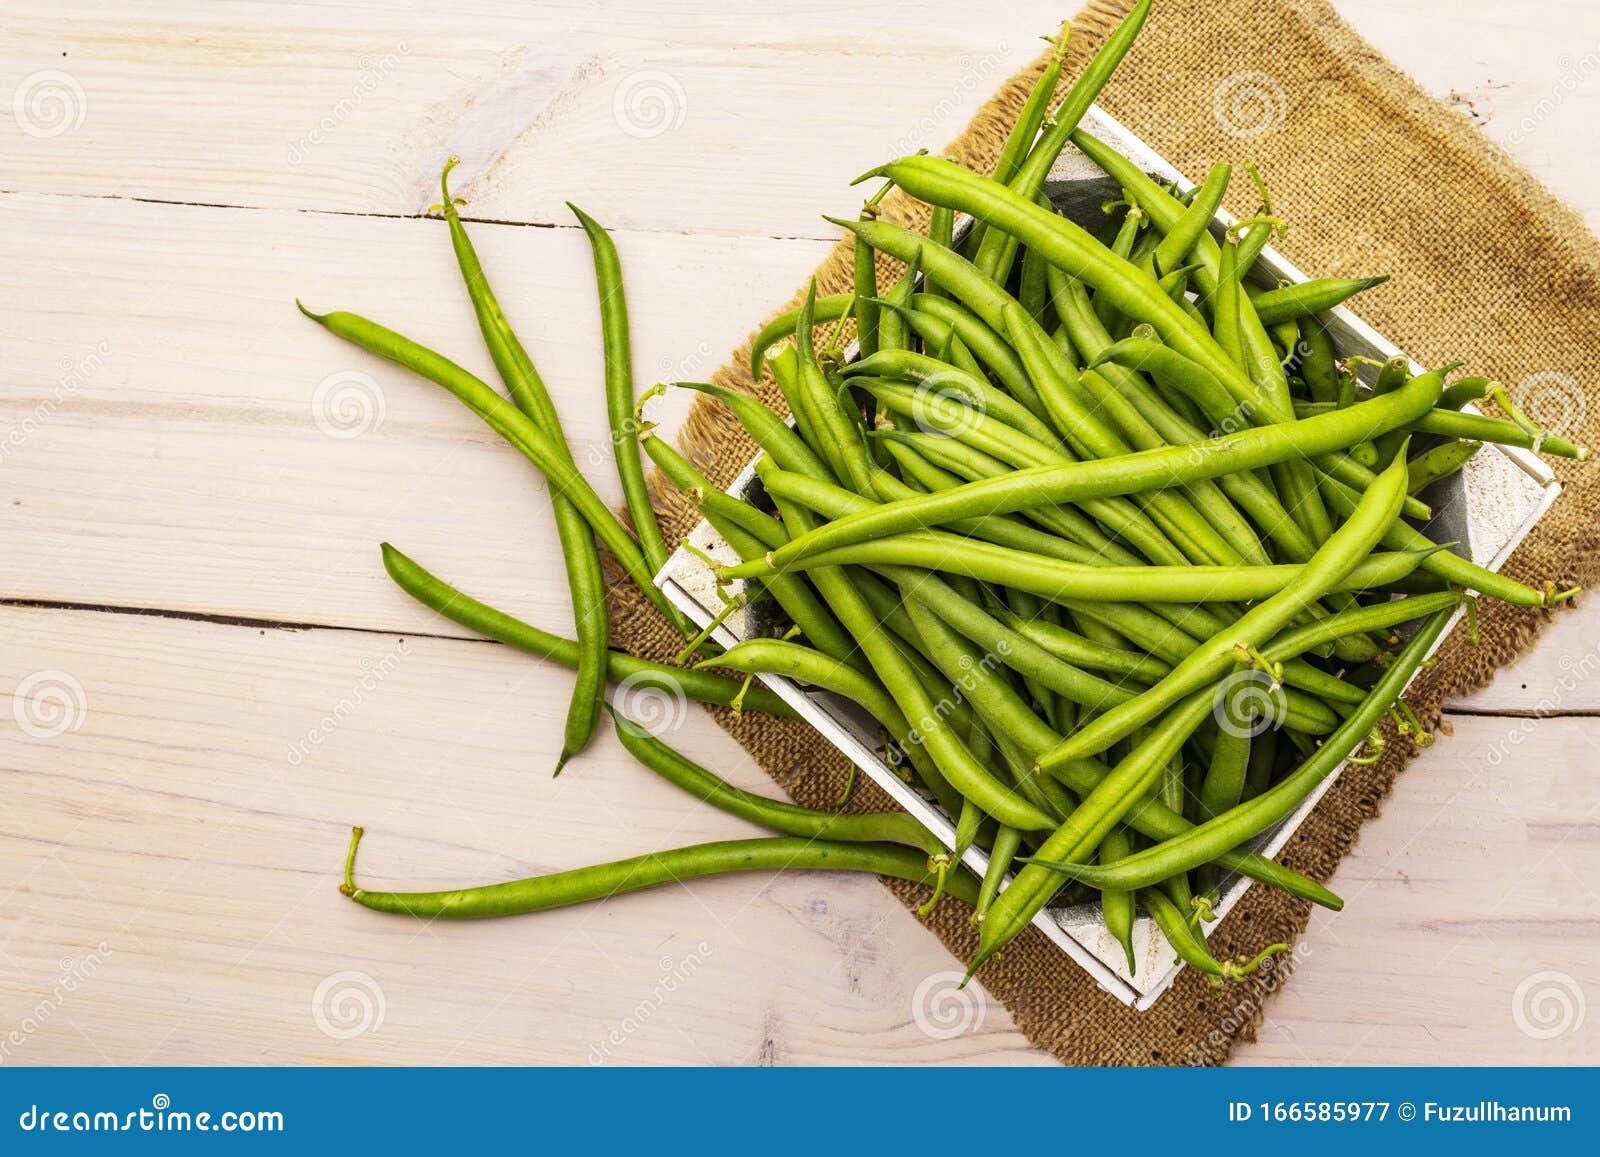 菜豆-中国蔬菜作物-图片